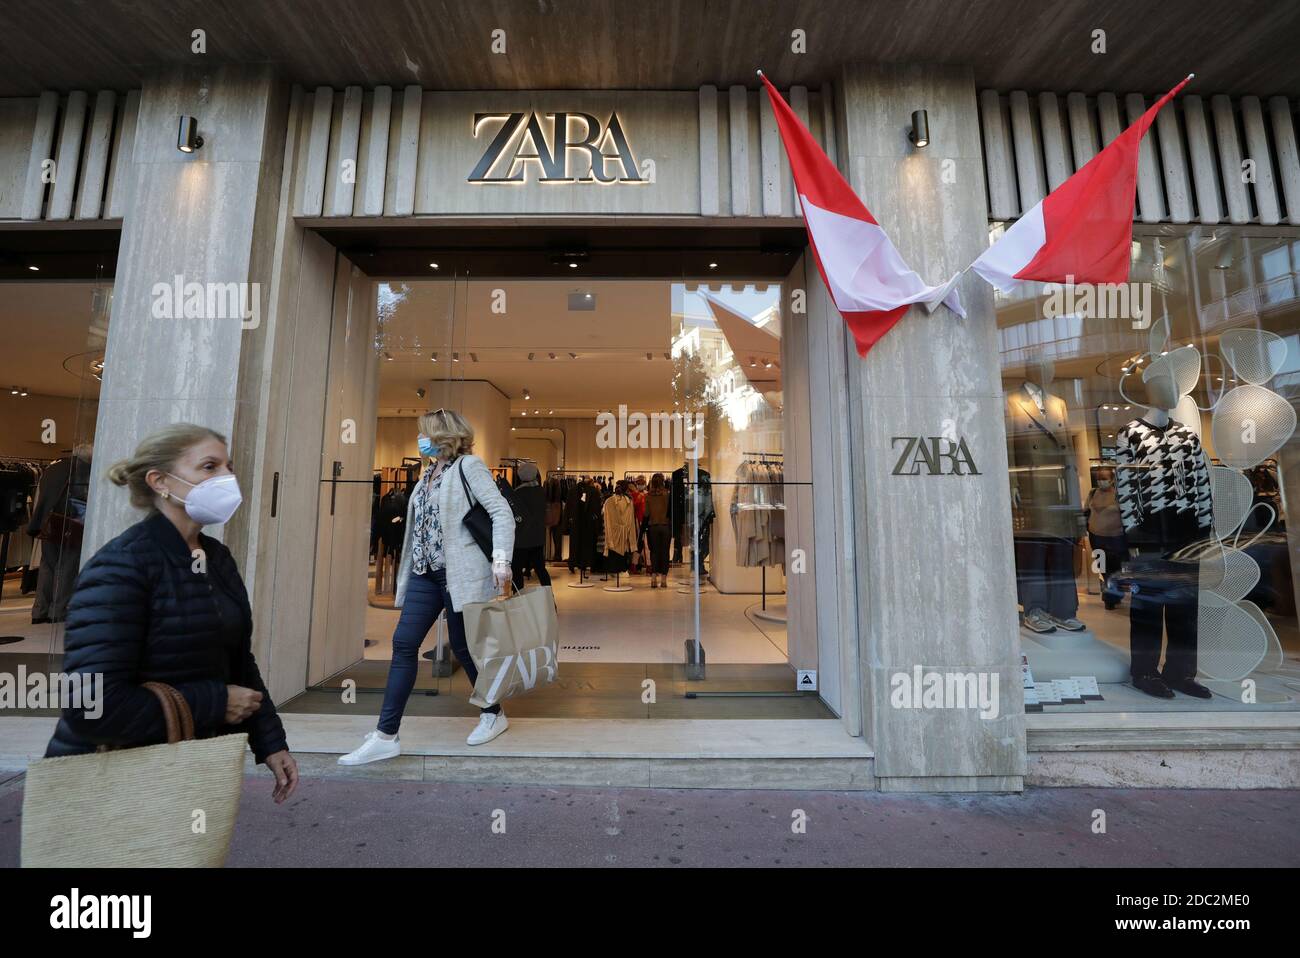 Zara shop in Banque de photographies et d'images à haute résolution - Alamy